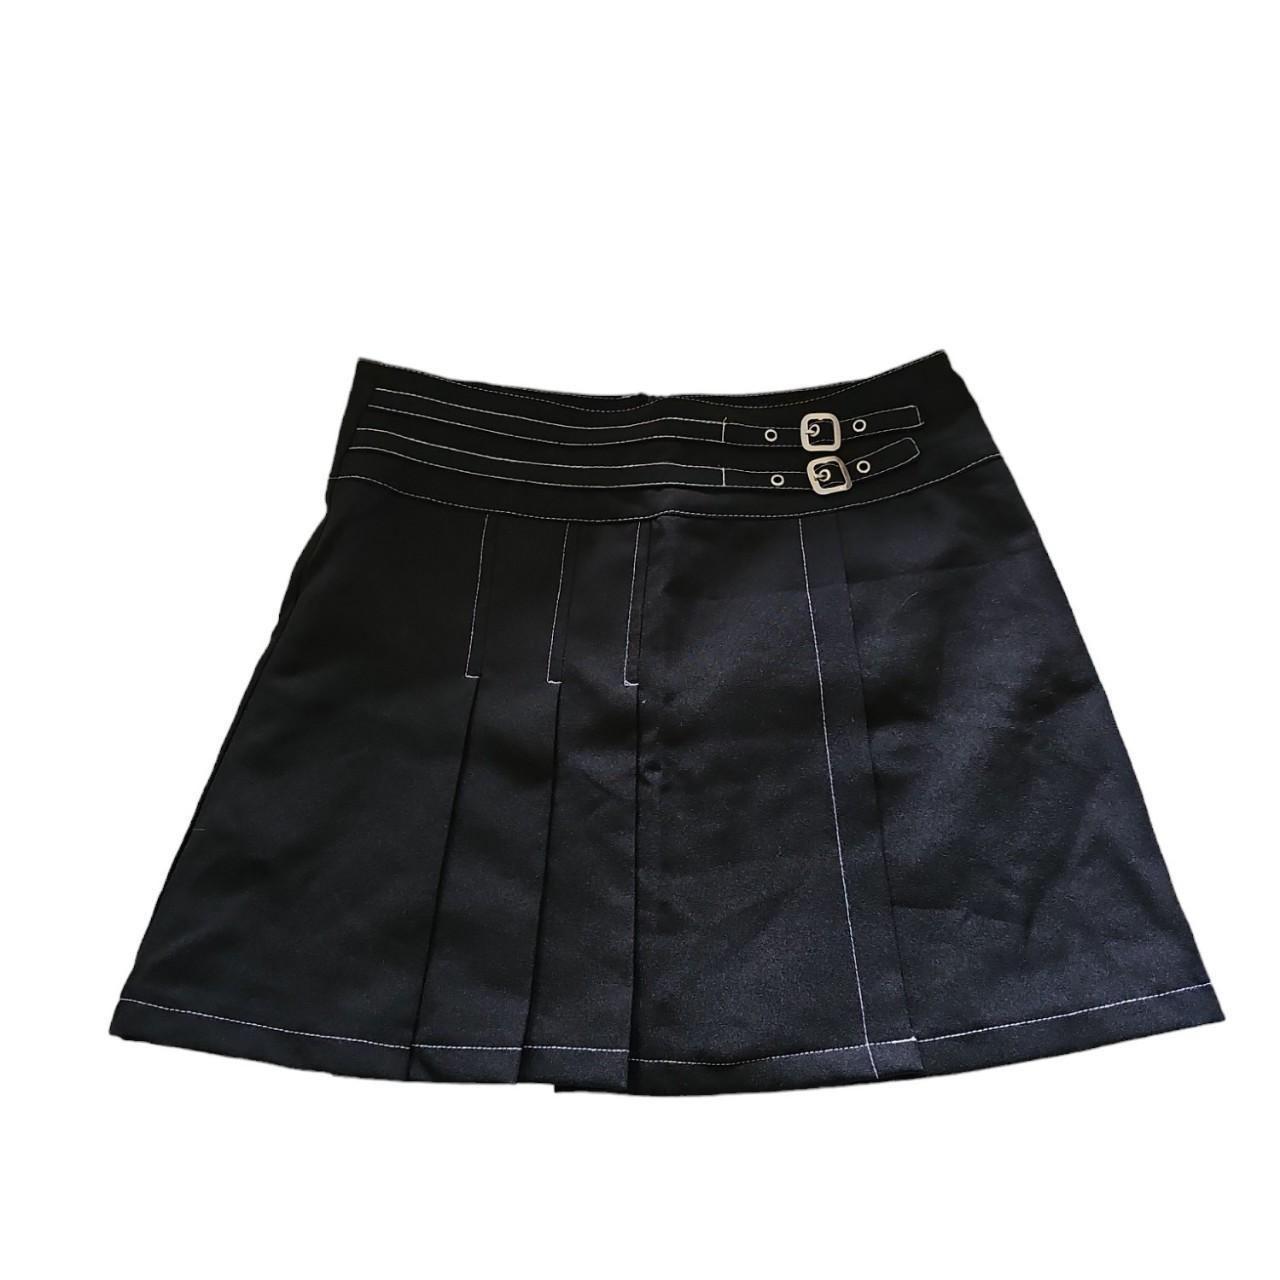 Vintage 90s goth punk pleated mini skirt Good... - Depop